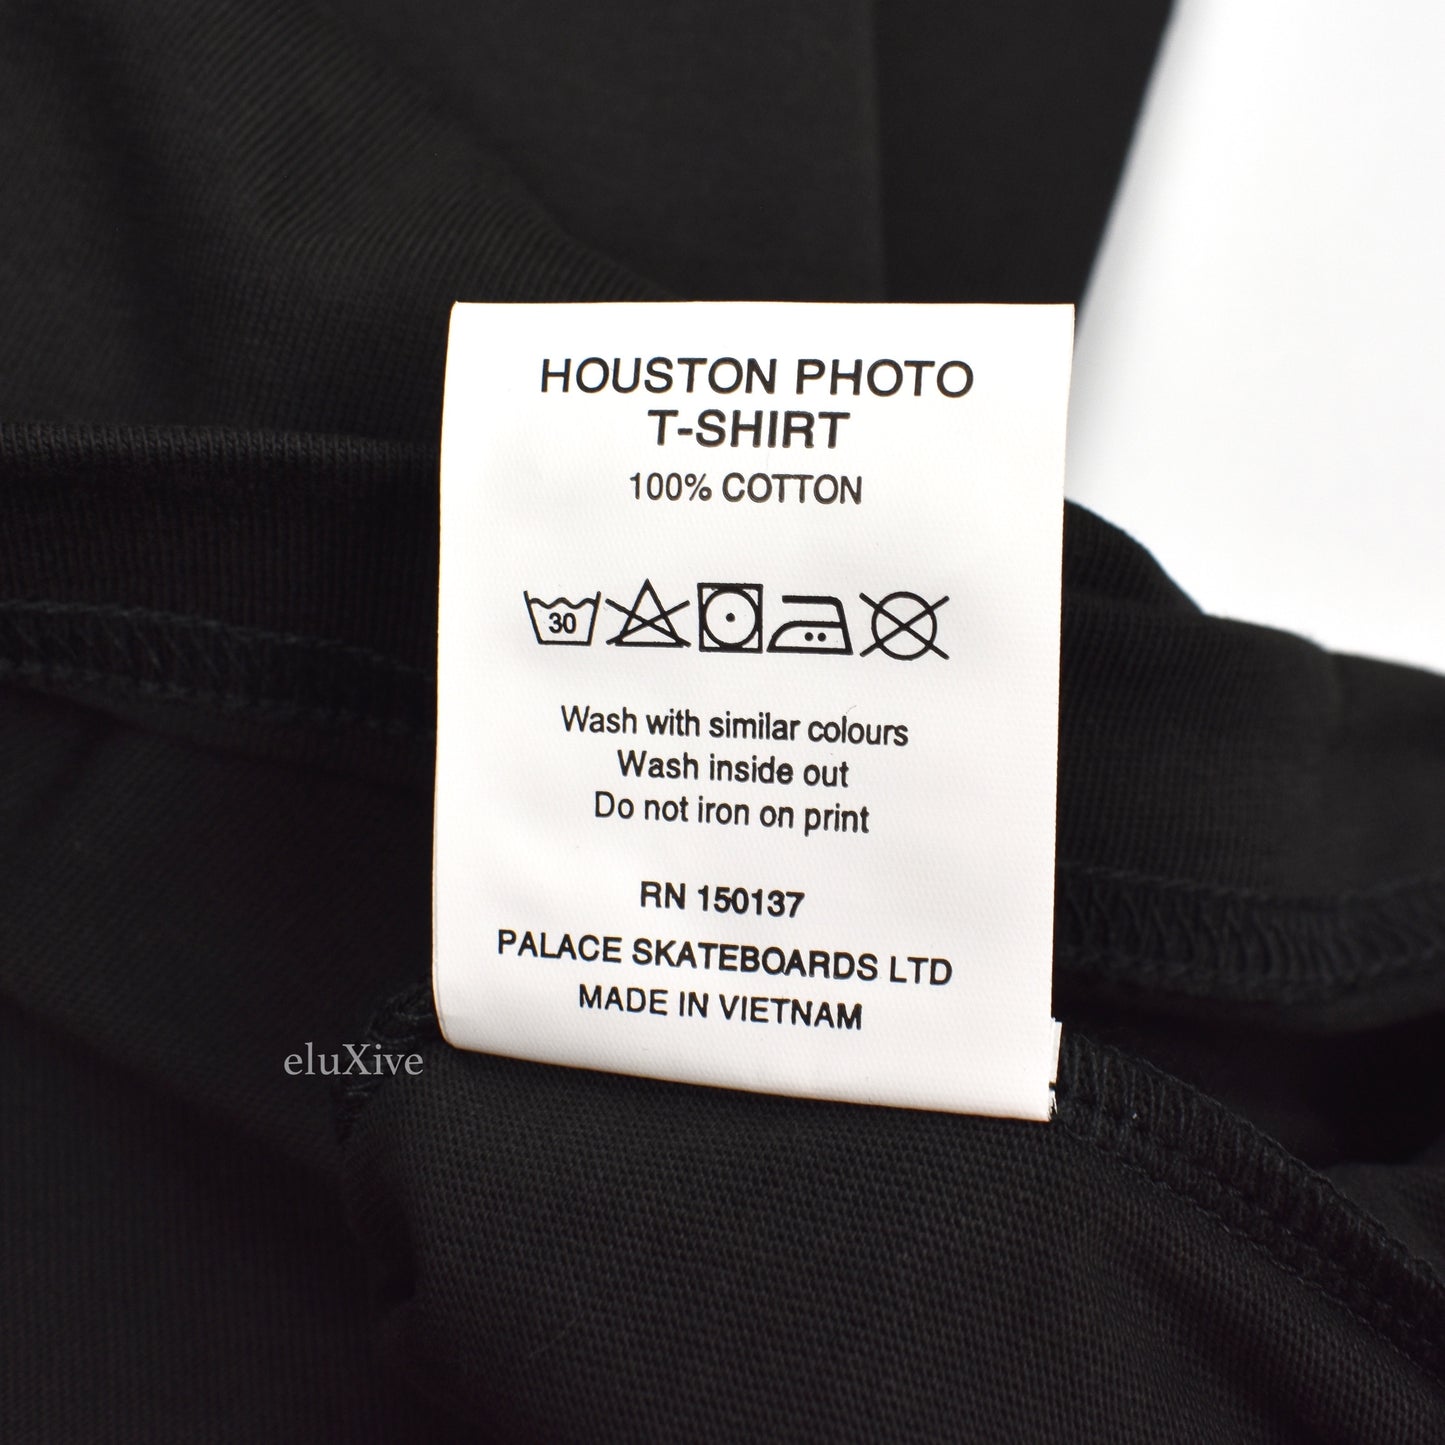 Palace - Whitney Houston Photo T-Shirt (Black)